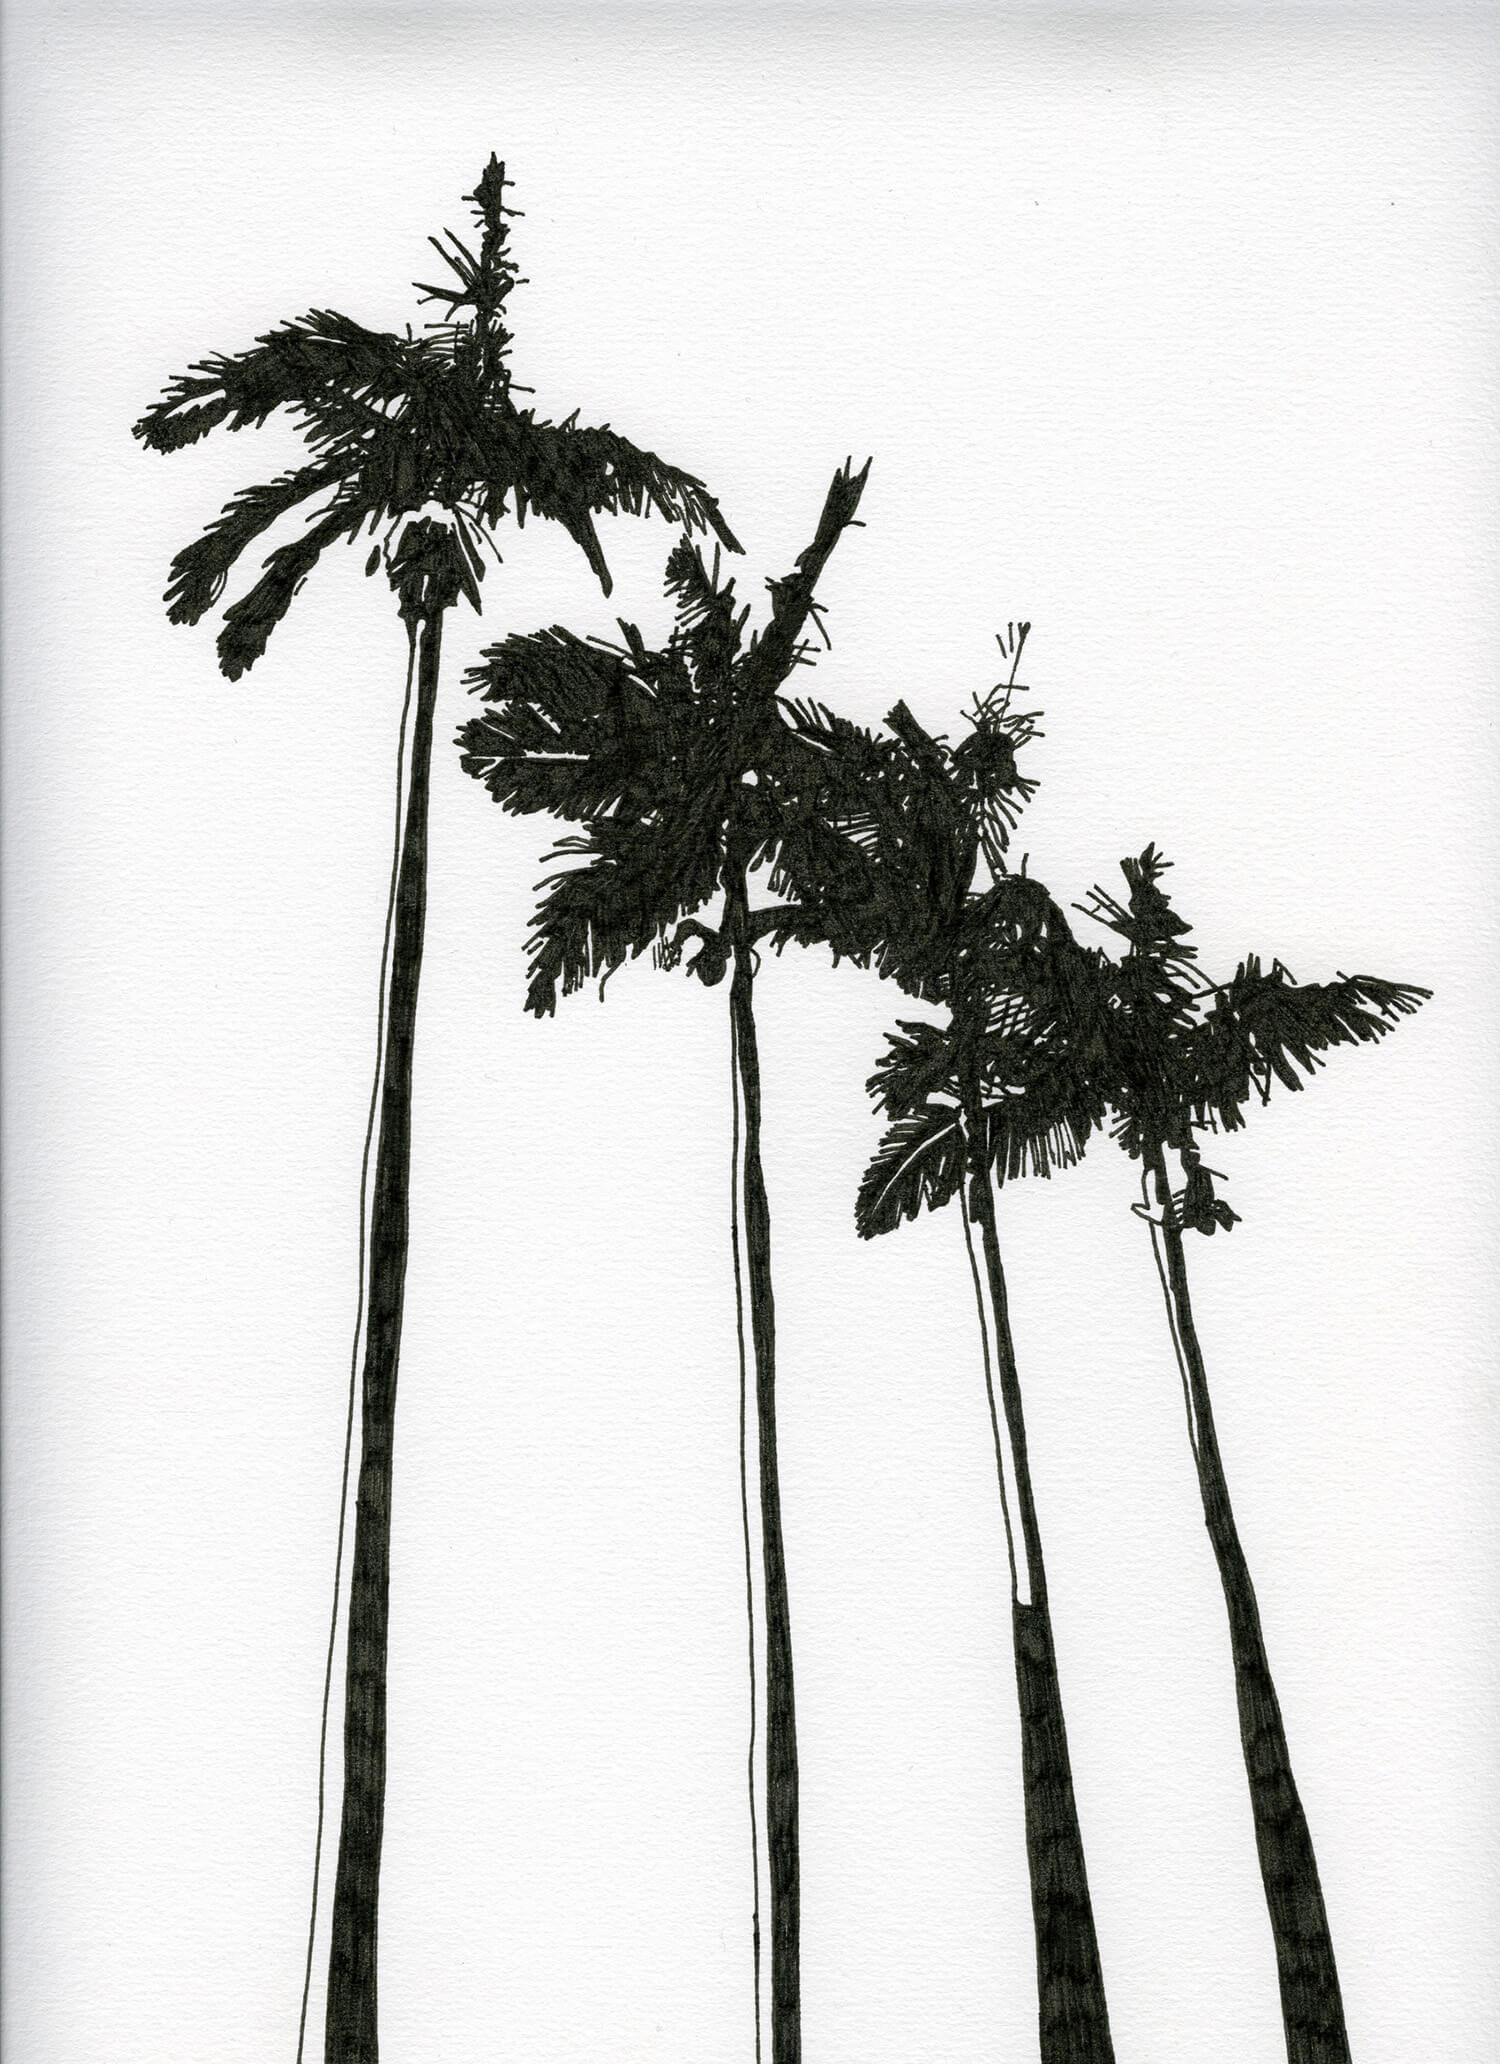 Les arbres - quatre palmiers